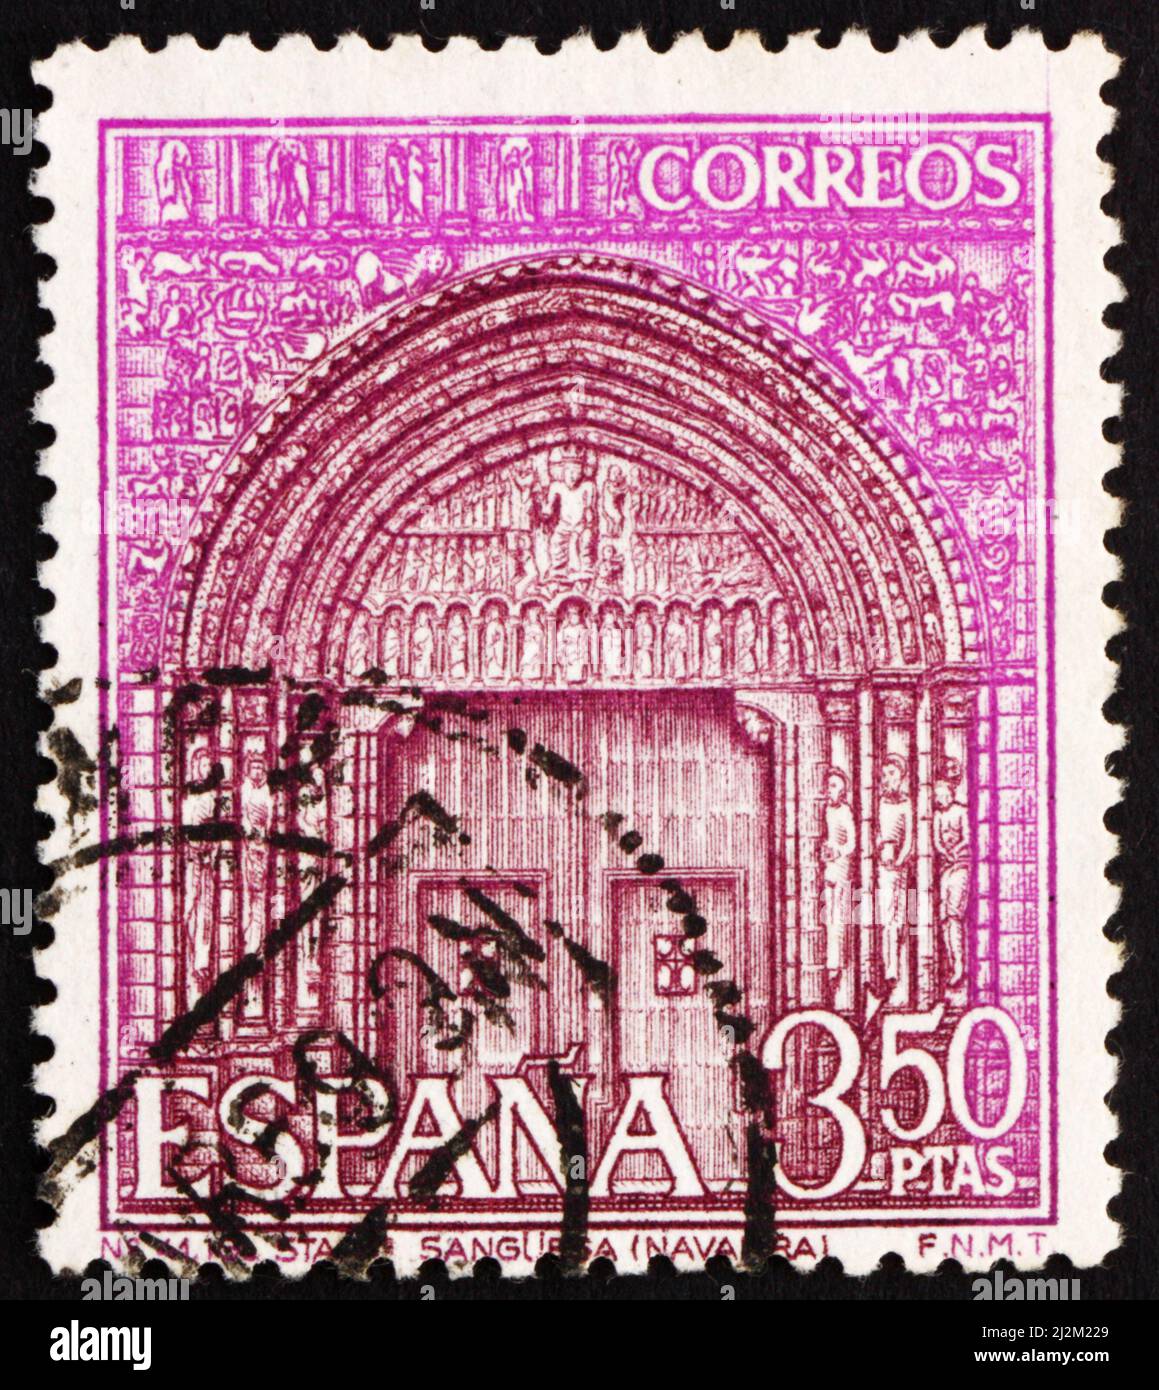 SPANIEN - UM 1968: Eine in Spanien gedruckte Marke zeigt Portal of St. Mary’s Church, Sanguesa, Navarra, Spanien, um 1968 Stockfoto